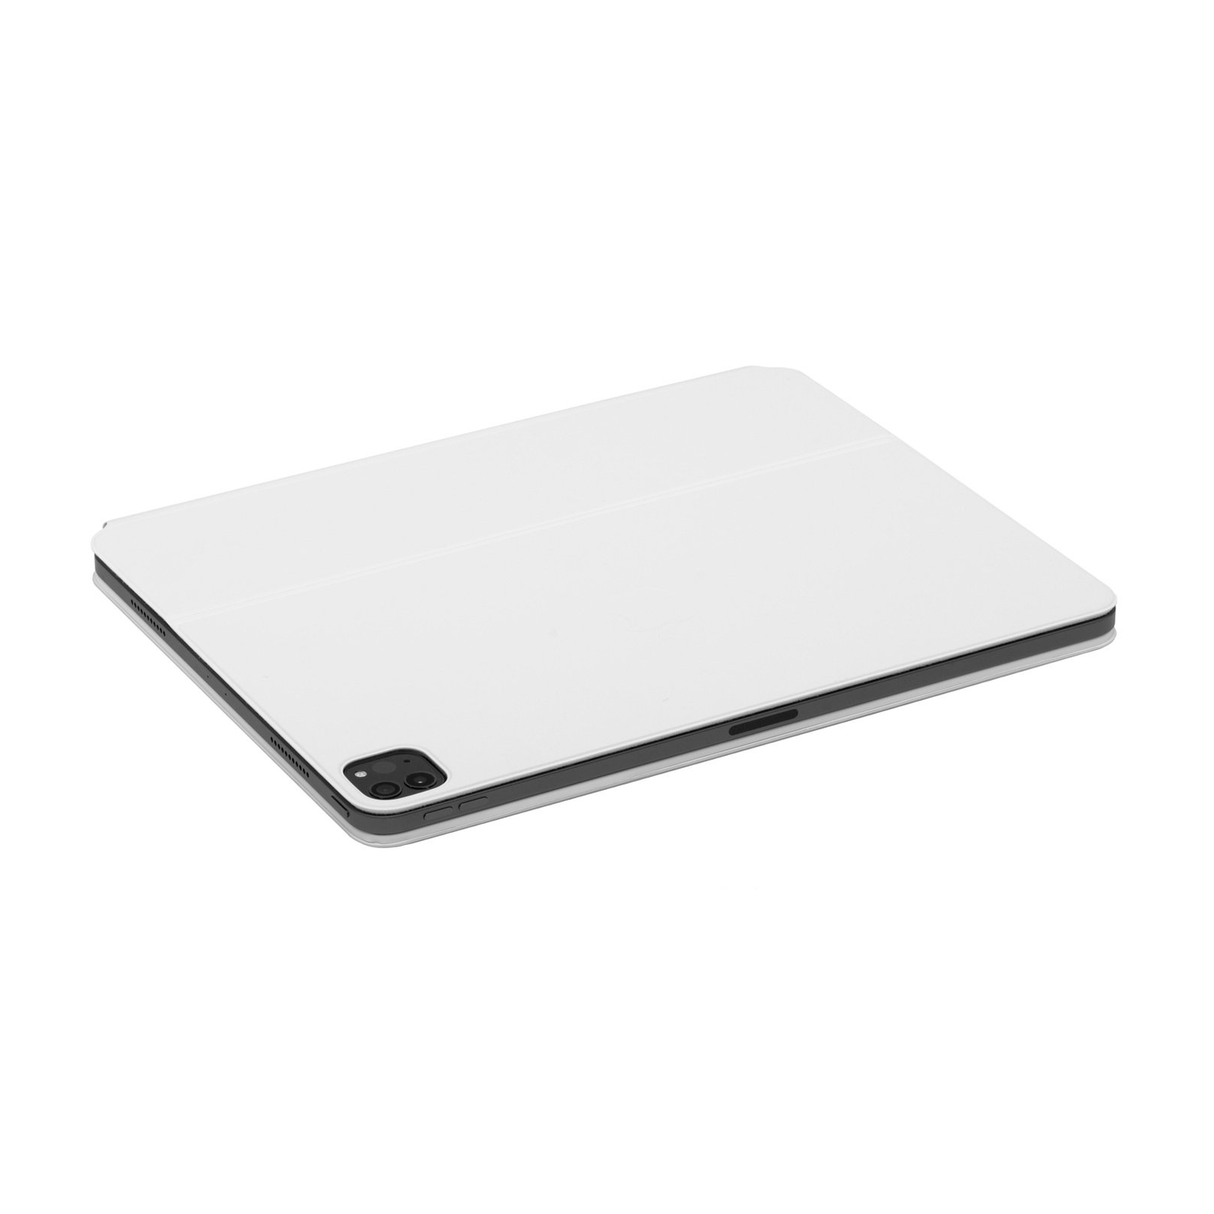 Teclado Smart Keyboard Folio para el iPad Pro de 12.9 pulgadas